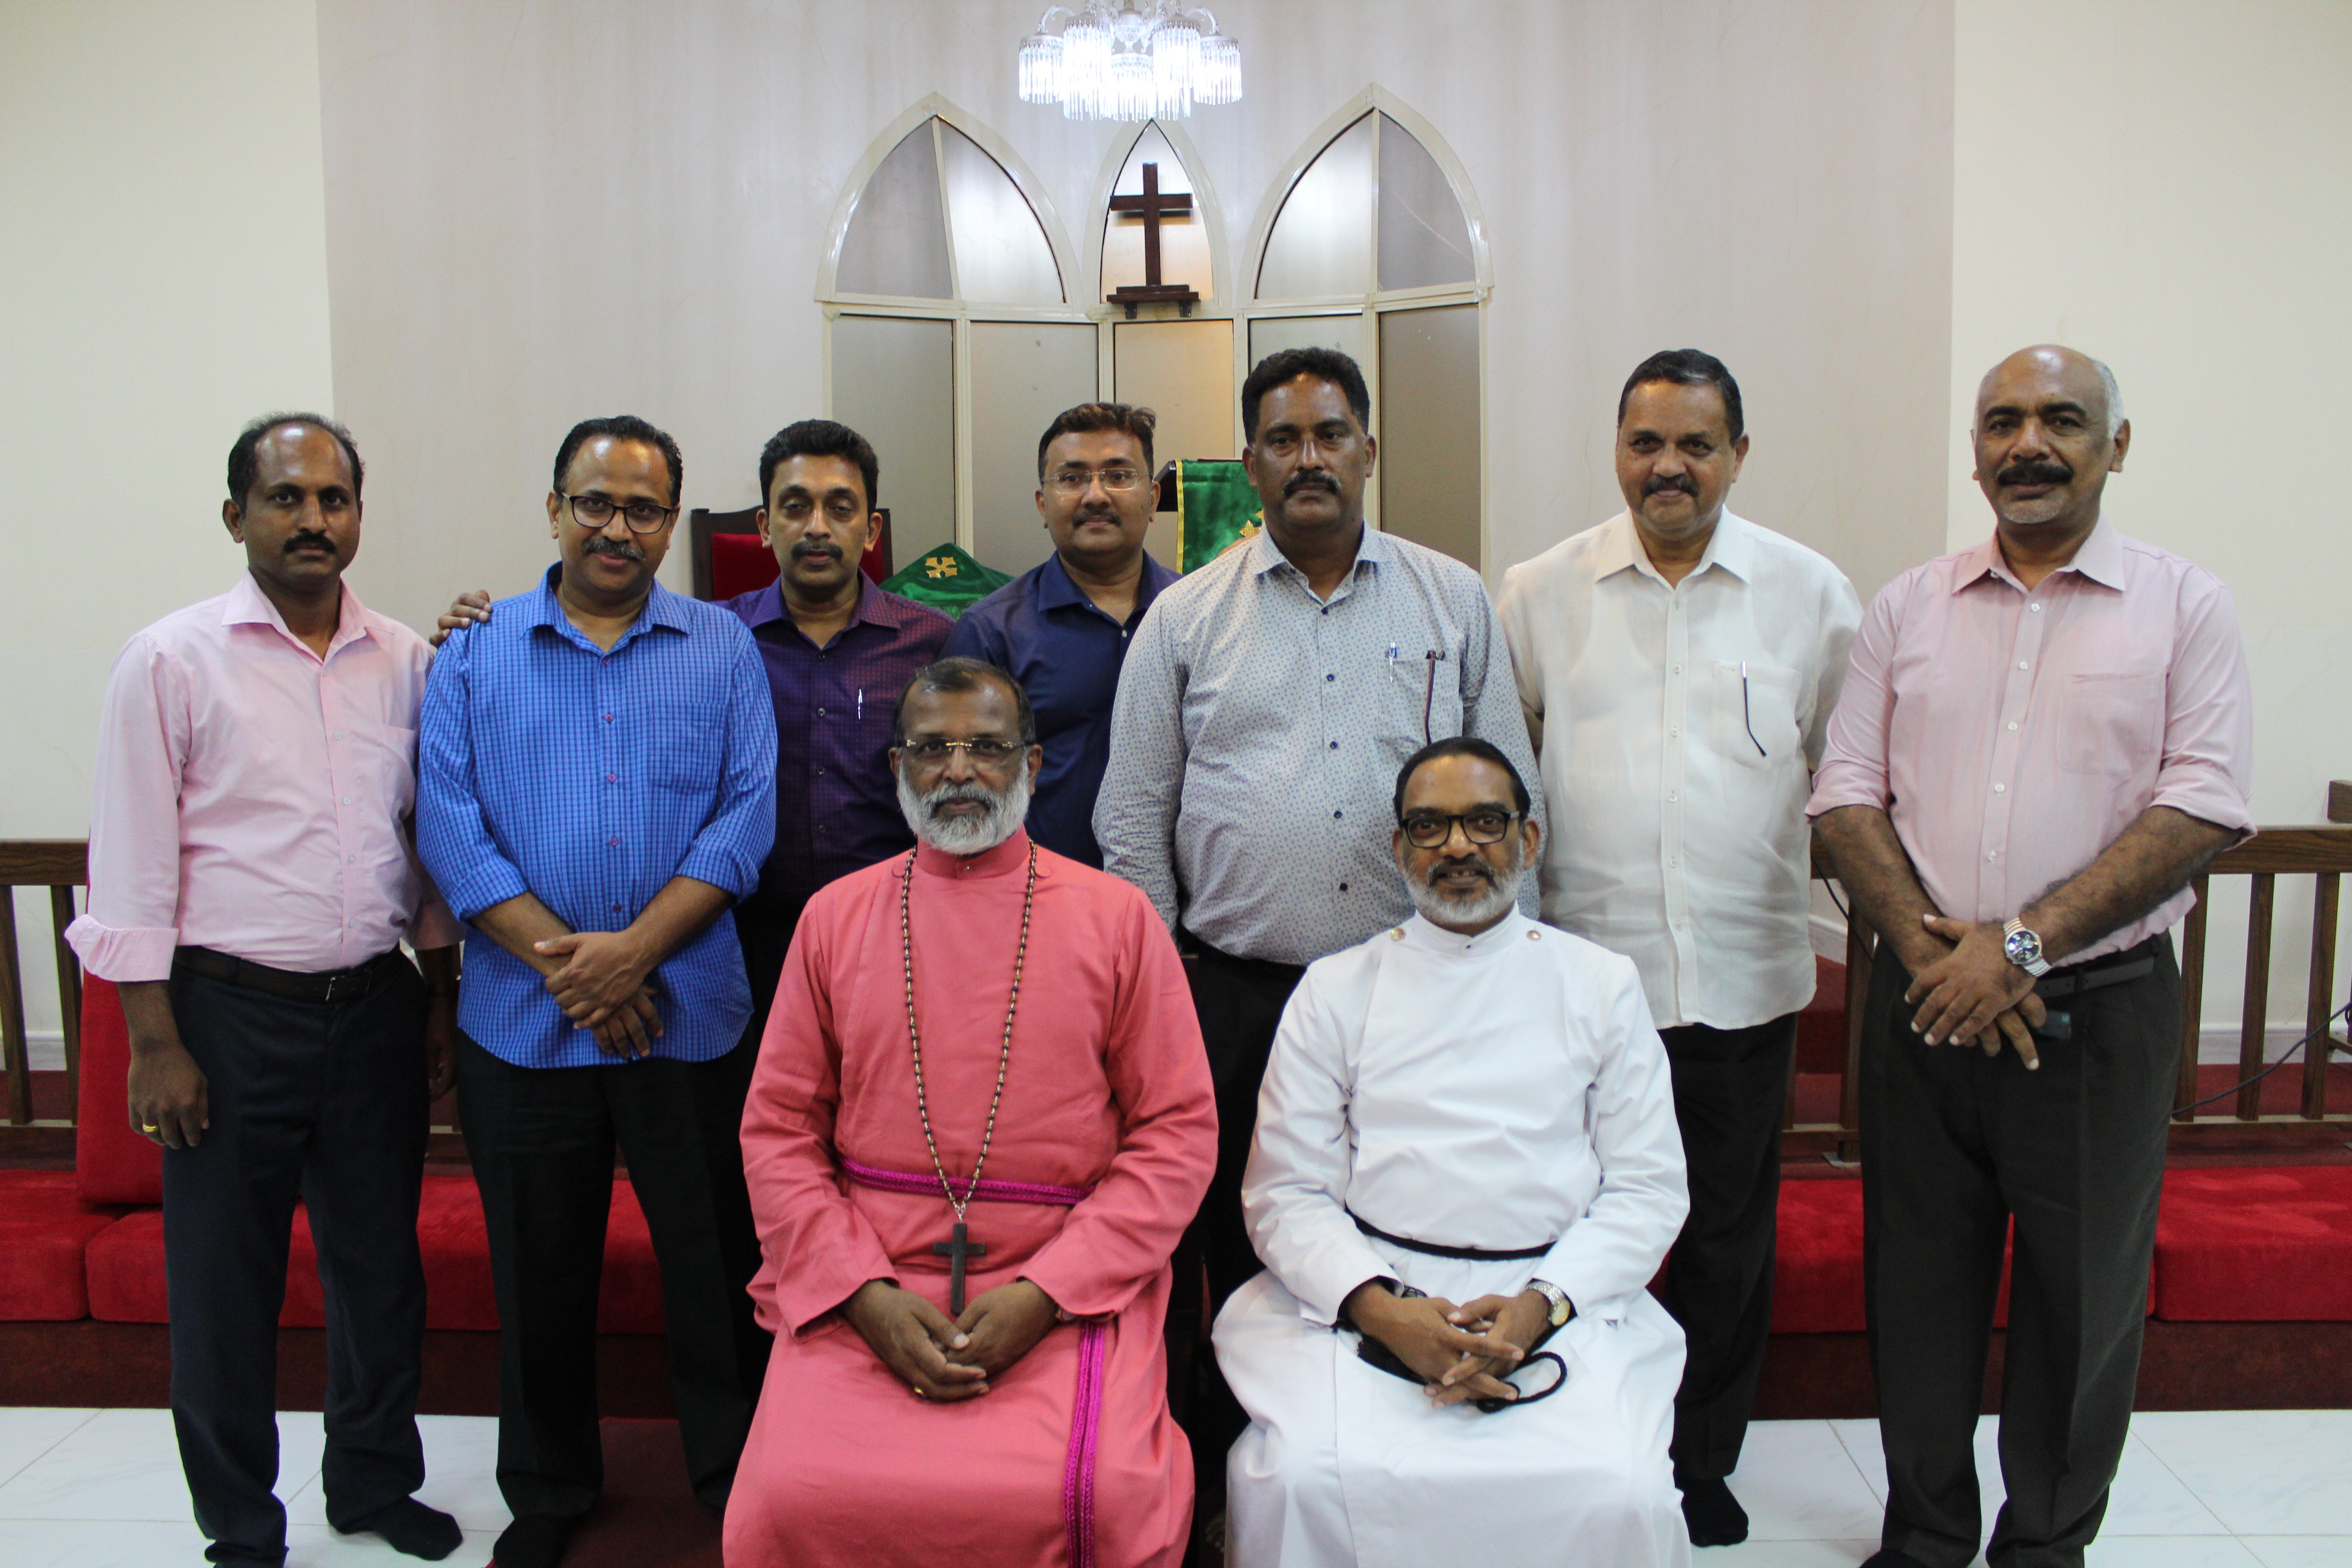 Laity Fellowship Committee 2022-23 with Rev. Shaji Jacob Thomas and Bishop Rt. Rev. Dr. Malayil Sabu Koshy Cherian